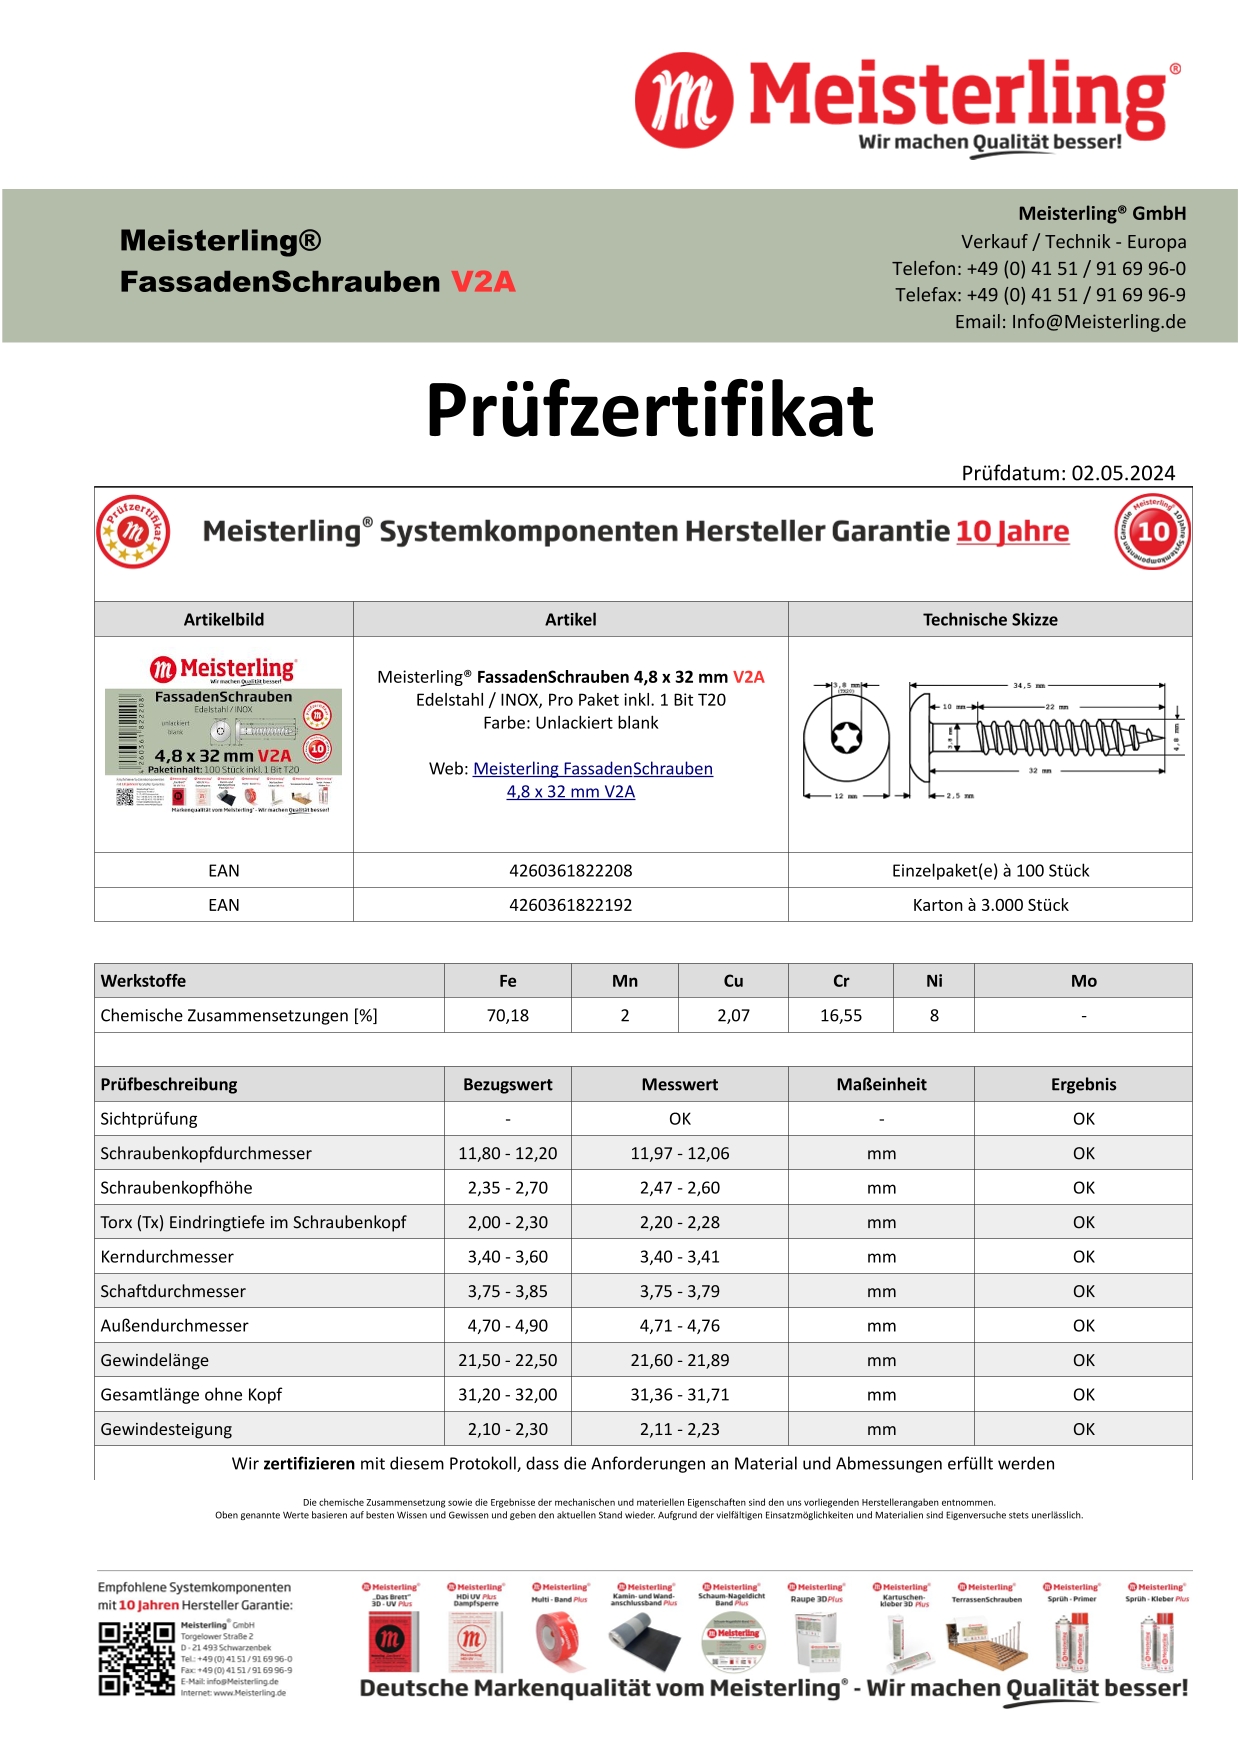 Prüfzertifikat Meisterling® FassadenSchrauben 4,8 x 32 mm V2a unlackiert blank